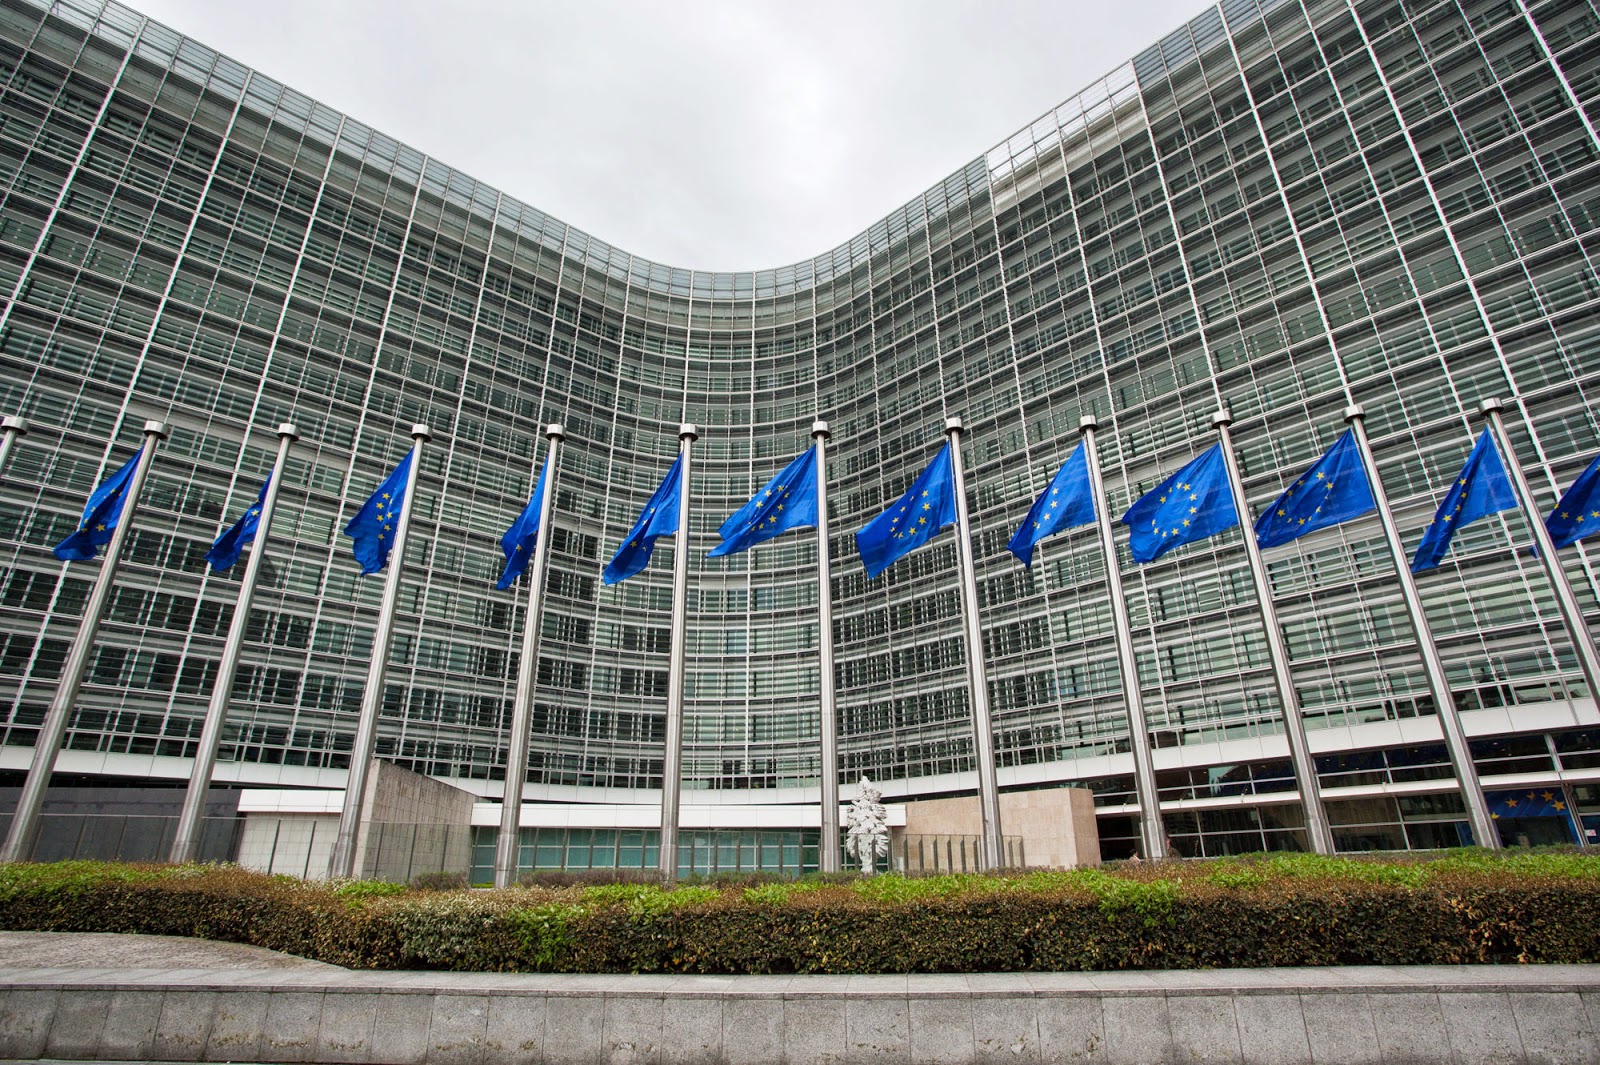 Με δασμούς σε τζινς και μπέρμπον προειδοποιεί η ΕΕ τις ΗΠΑ, αν επιμείνουν για χάλυβα και αλουμίνιο